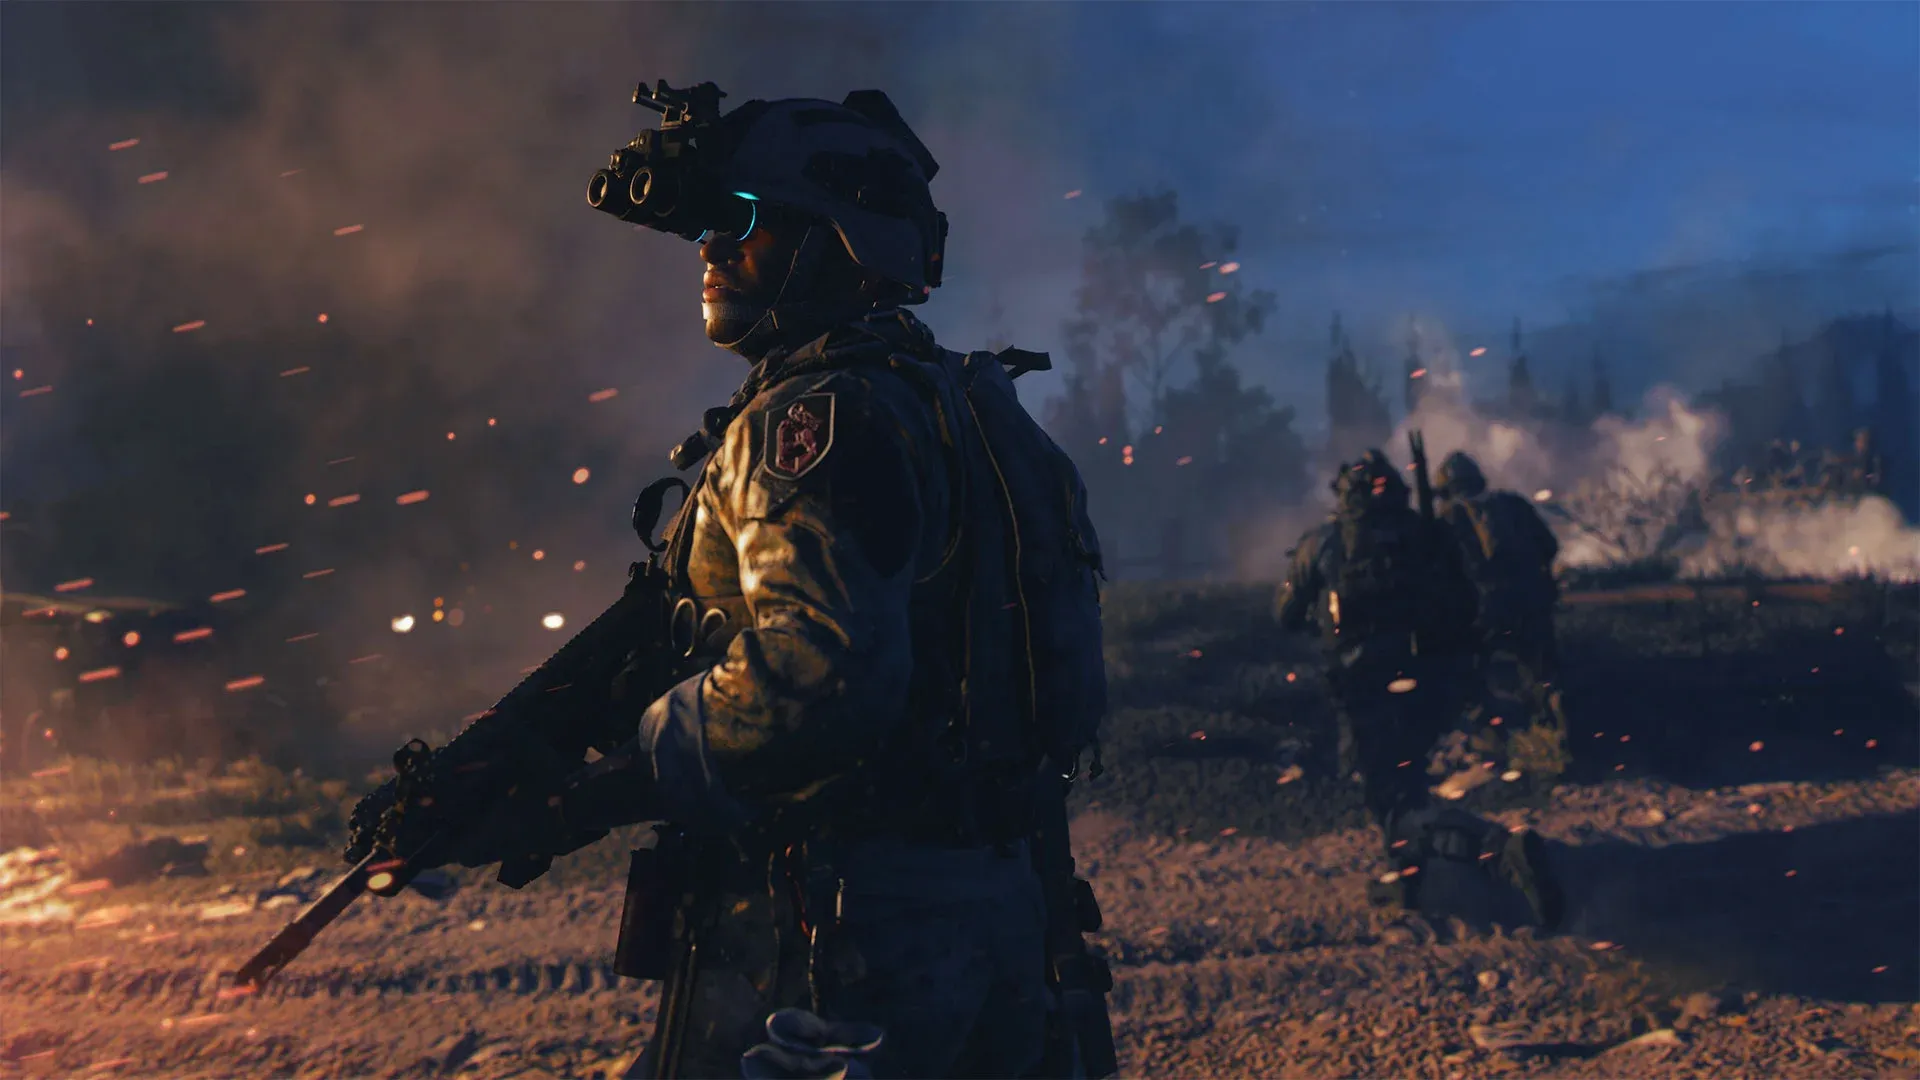 Atualizado: Requisitos mínimos para jogar Call Of Duty Modern Warfare 2019  no PC